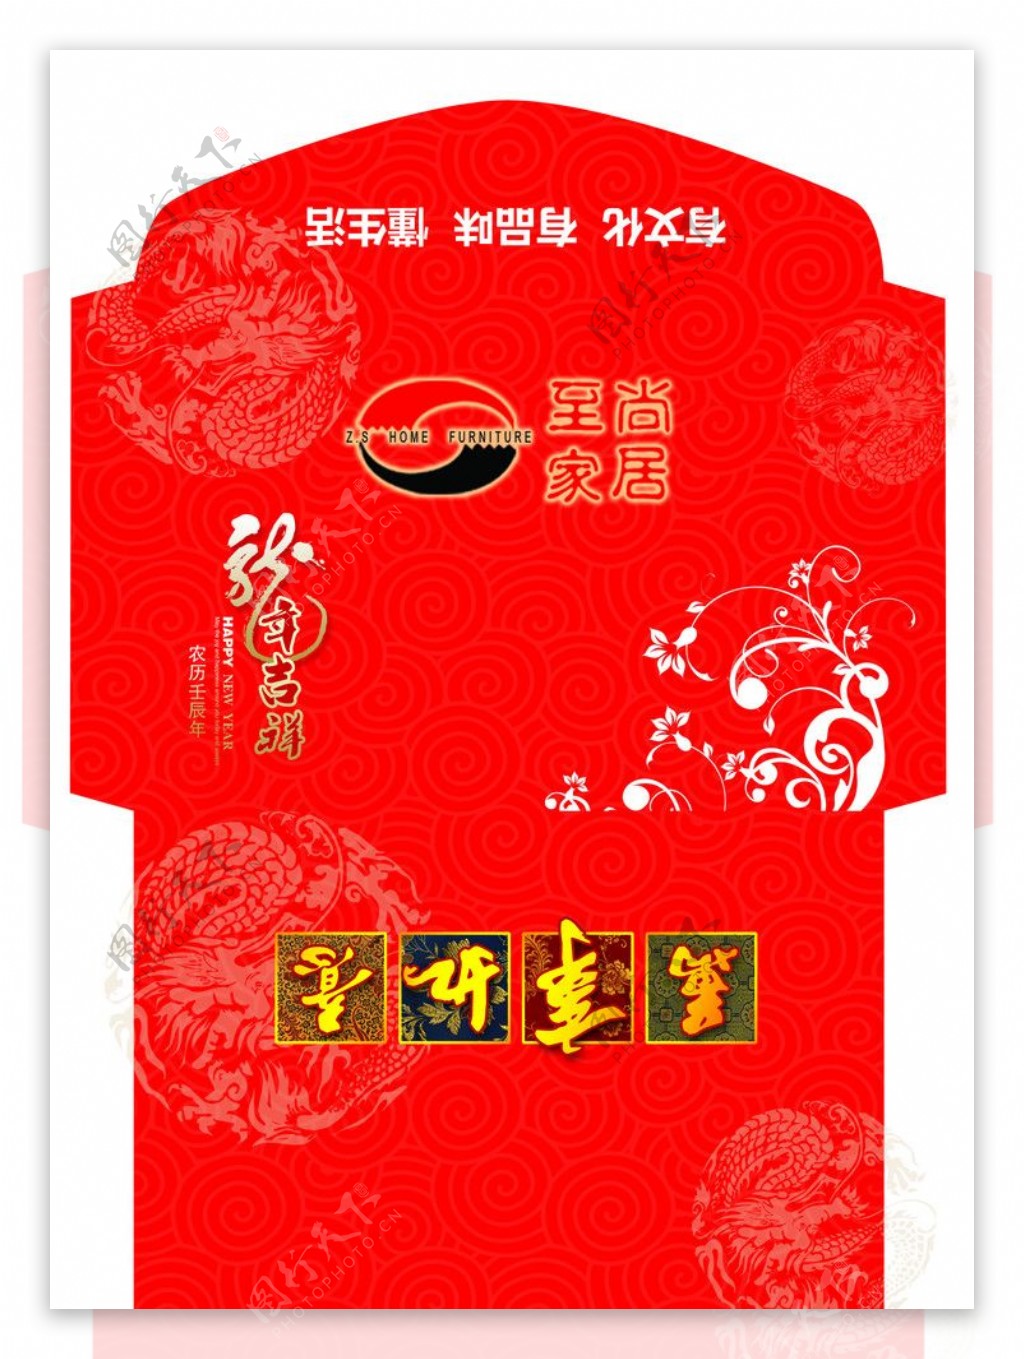 2012龙年喜庆红包信封图片